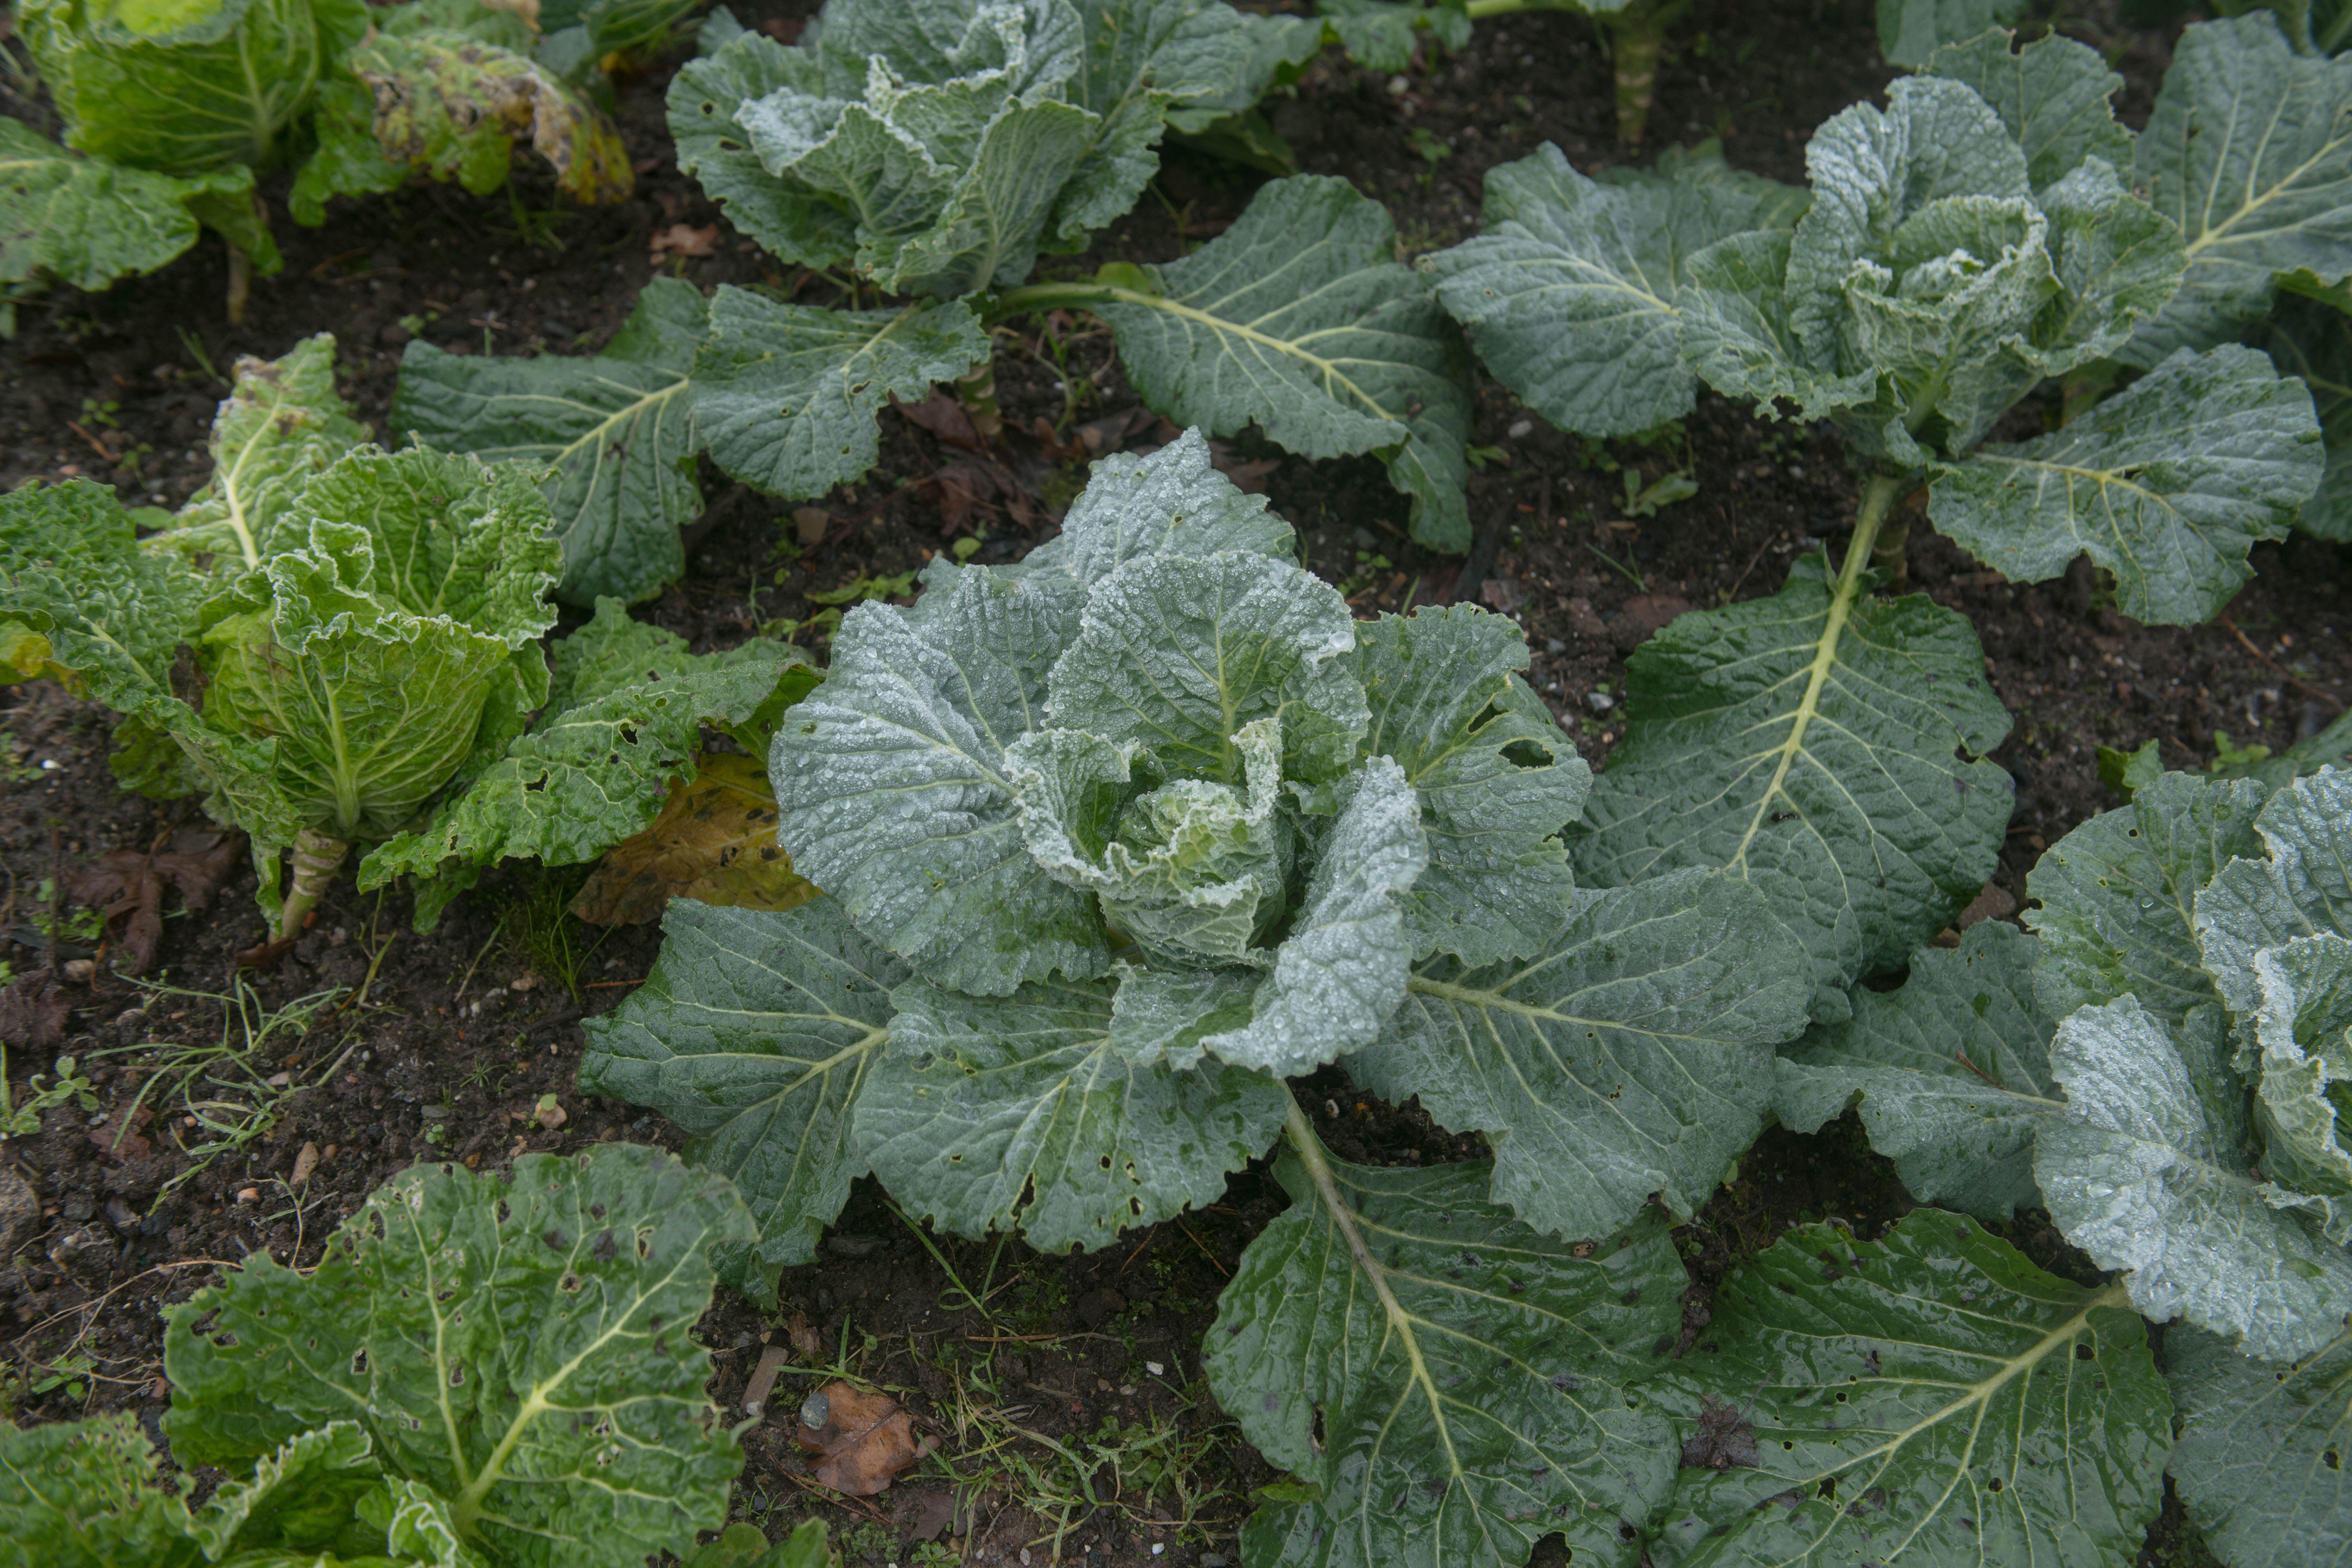 Winter cabbage (Alamy/PA)